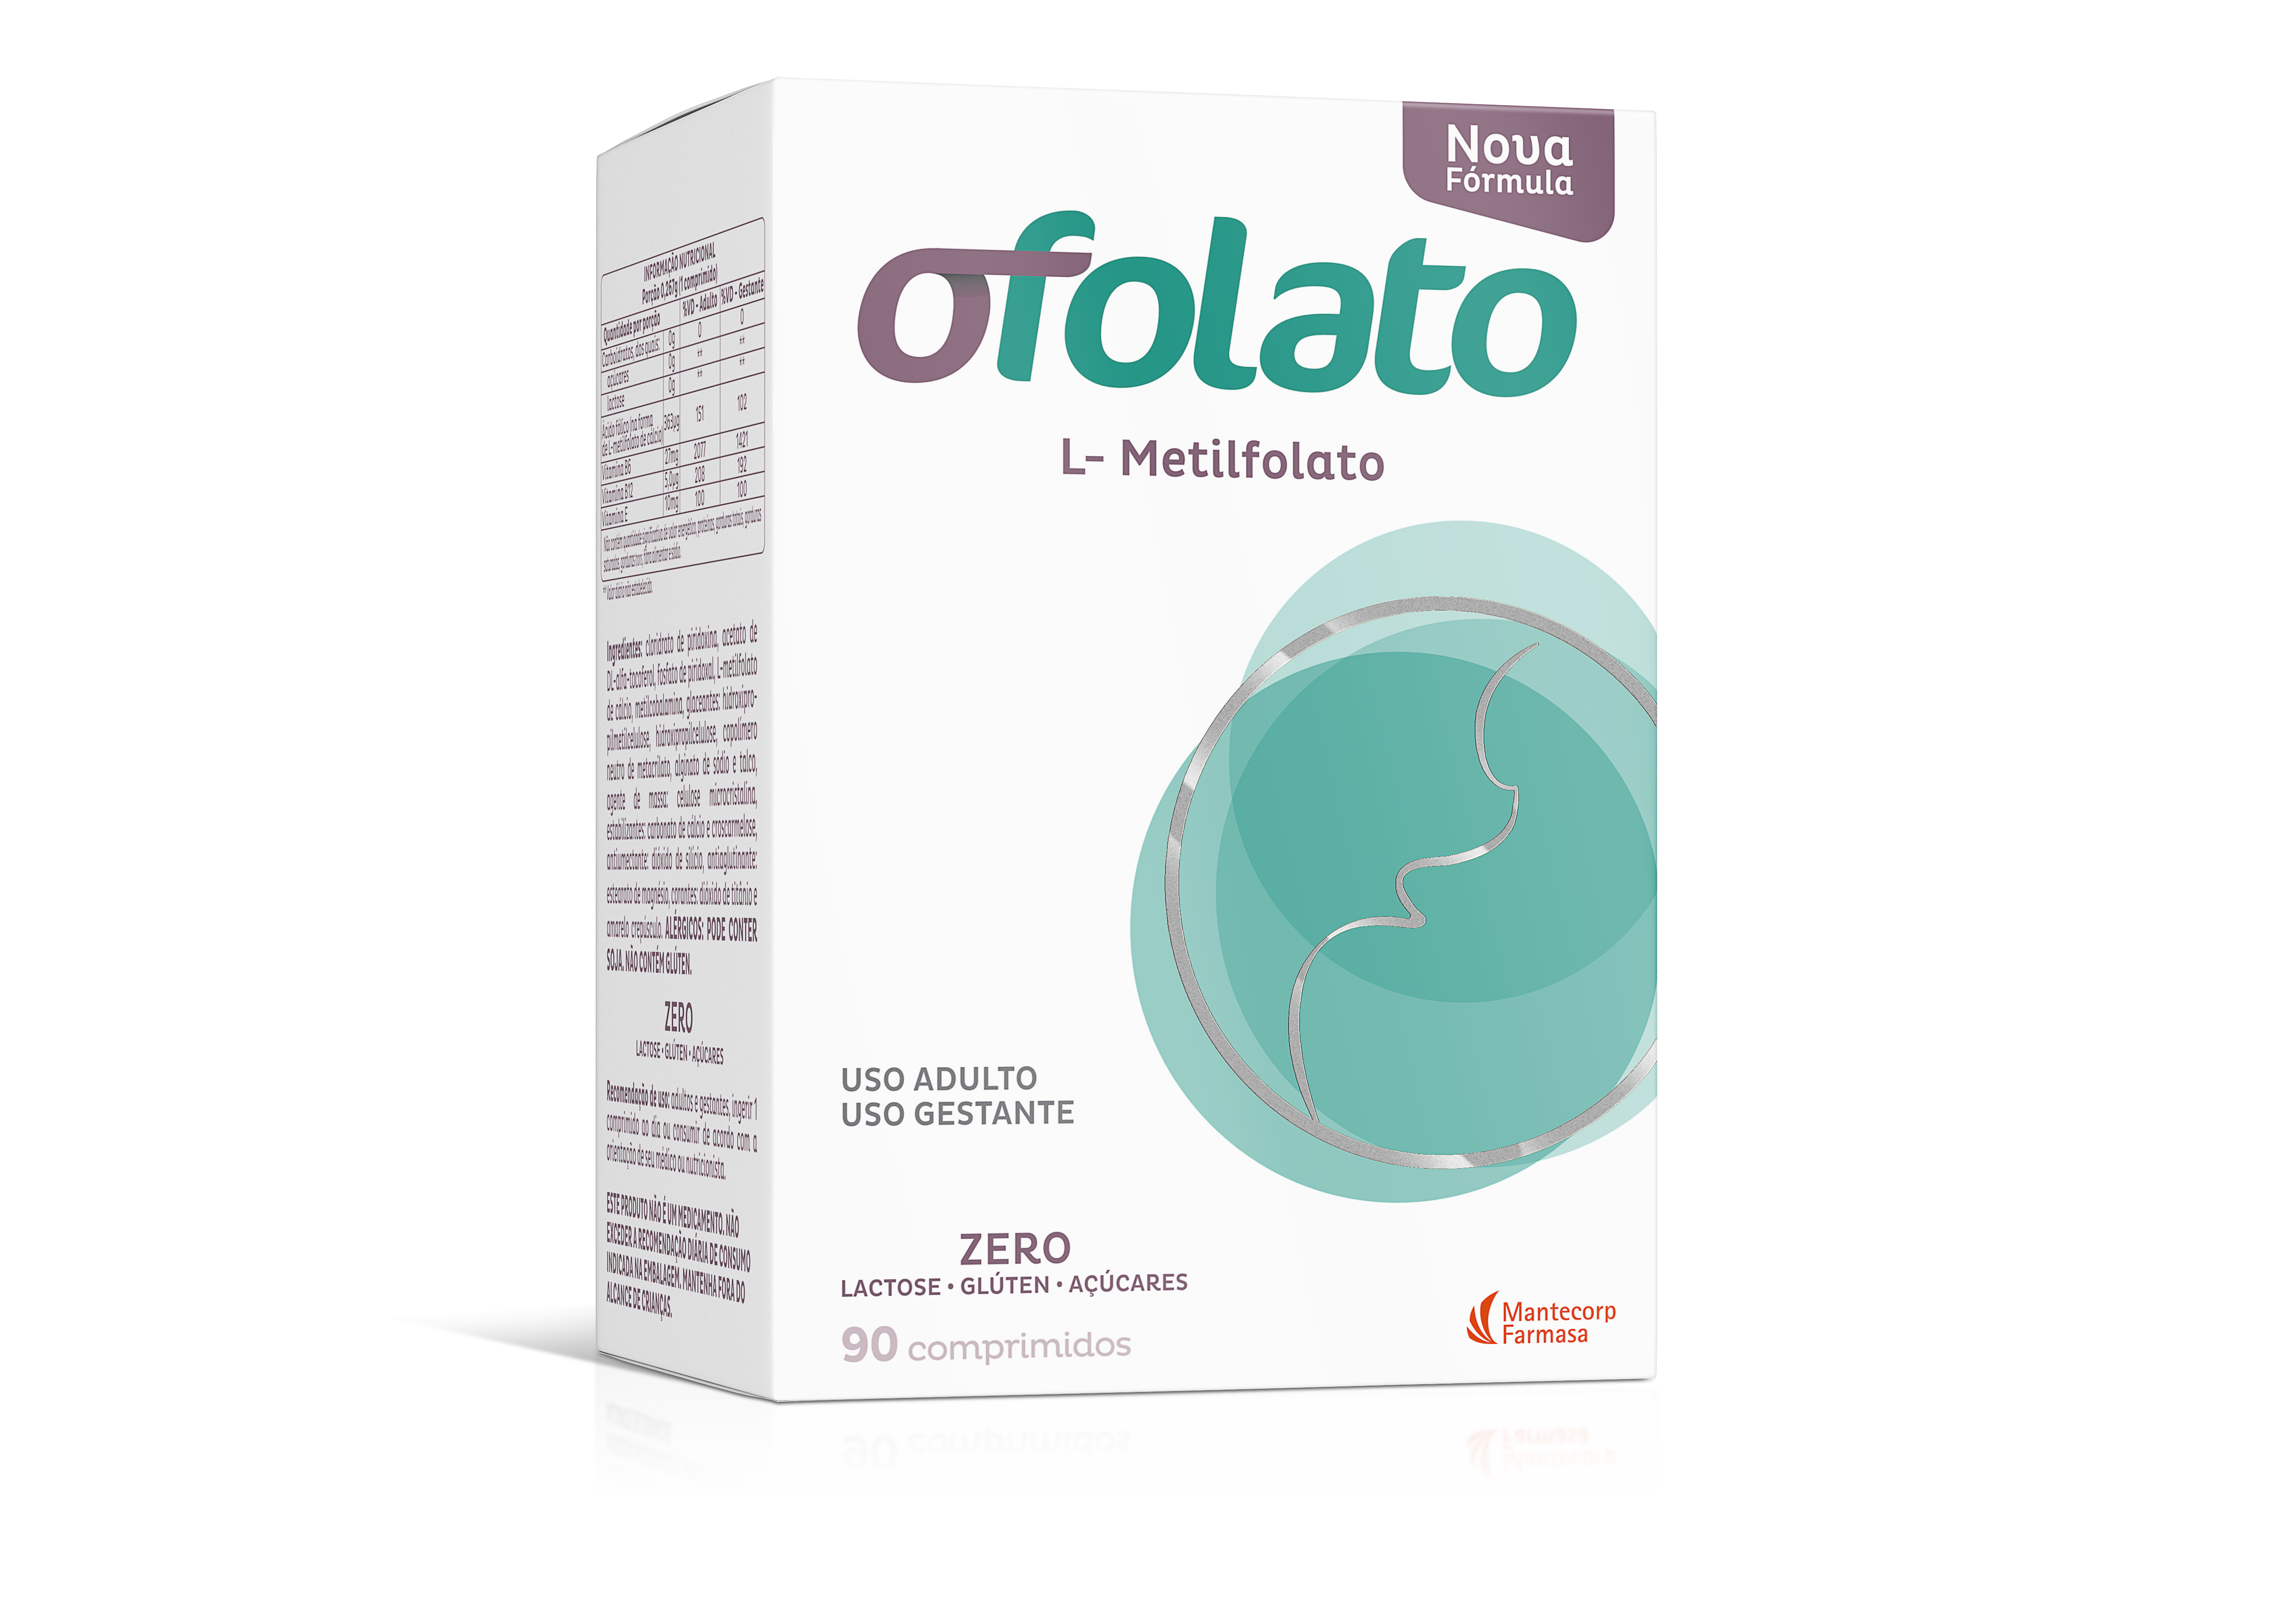 OFOLATO FER 90 COMPRIMIDOS - Ultrafarma